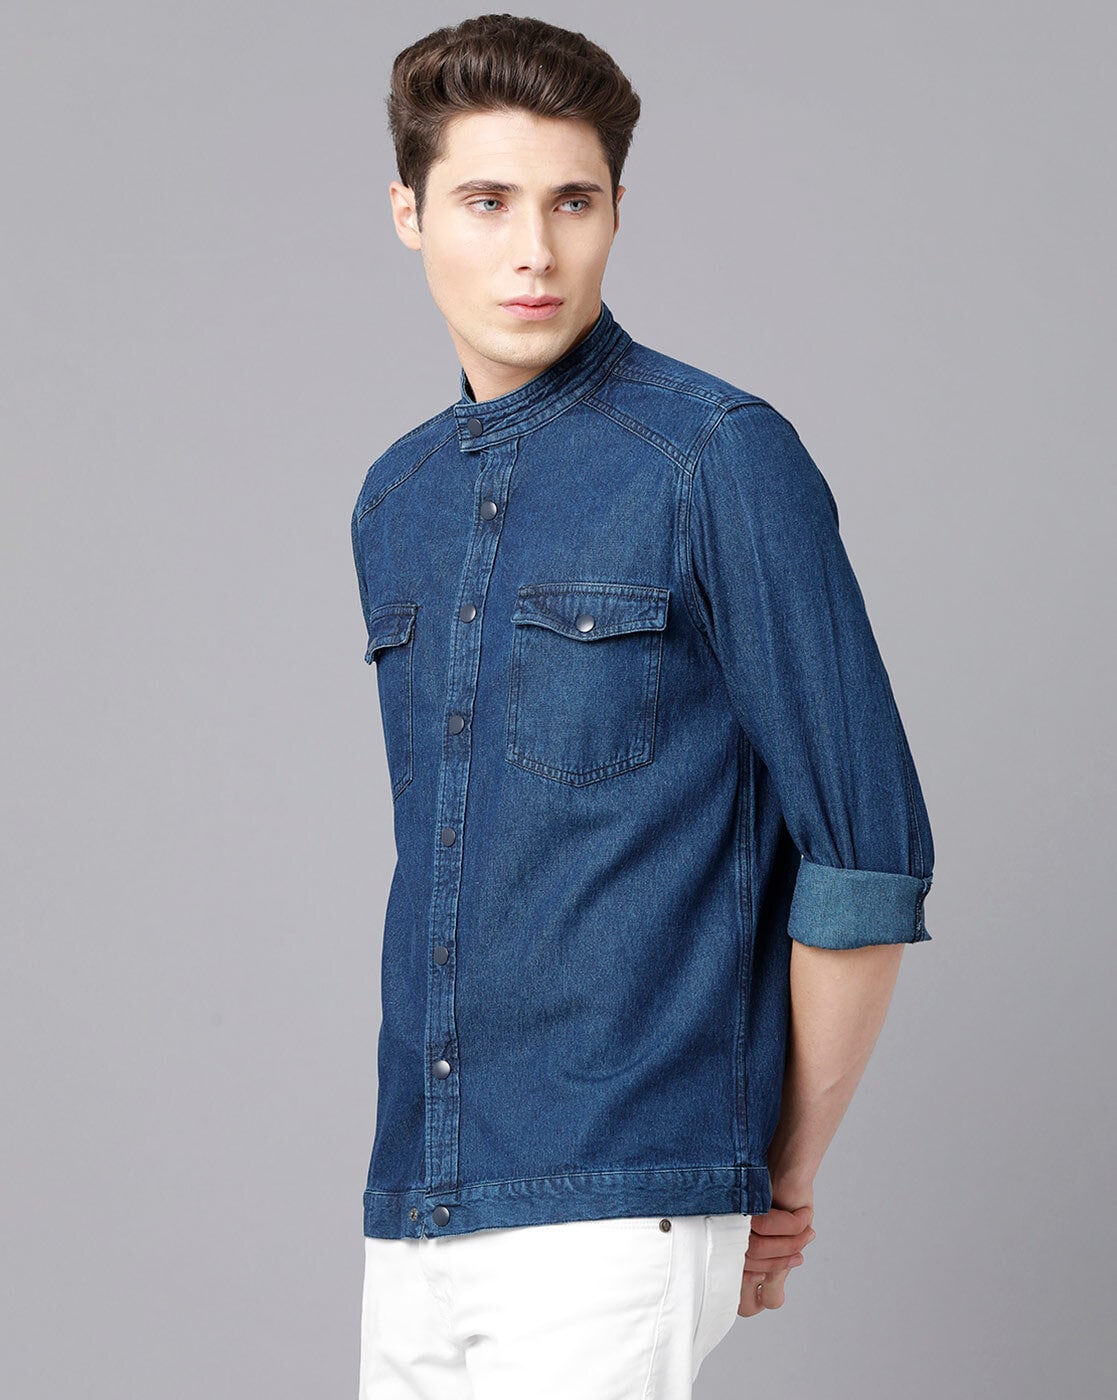 Urbano Fashion Men's Light Blue Denim Mandarin Collar Shirt (shirt-icewashden-lblu-38-fba)  : Amazon.in: Clothing & Accessories